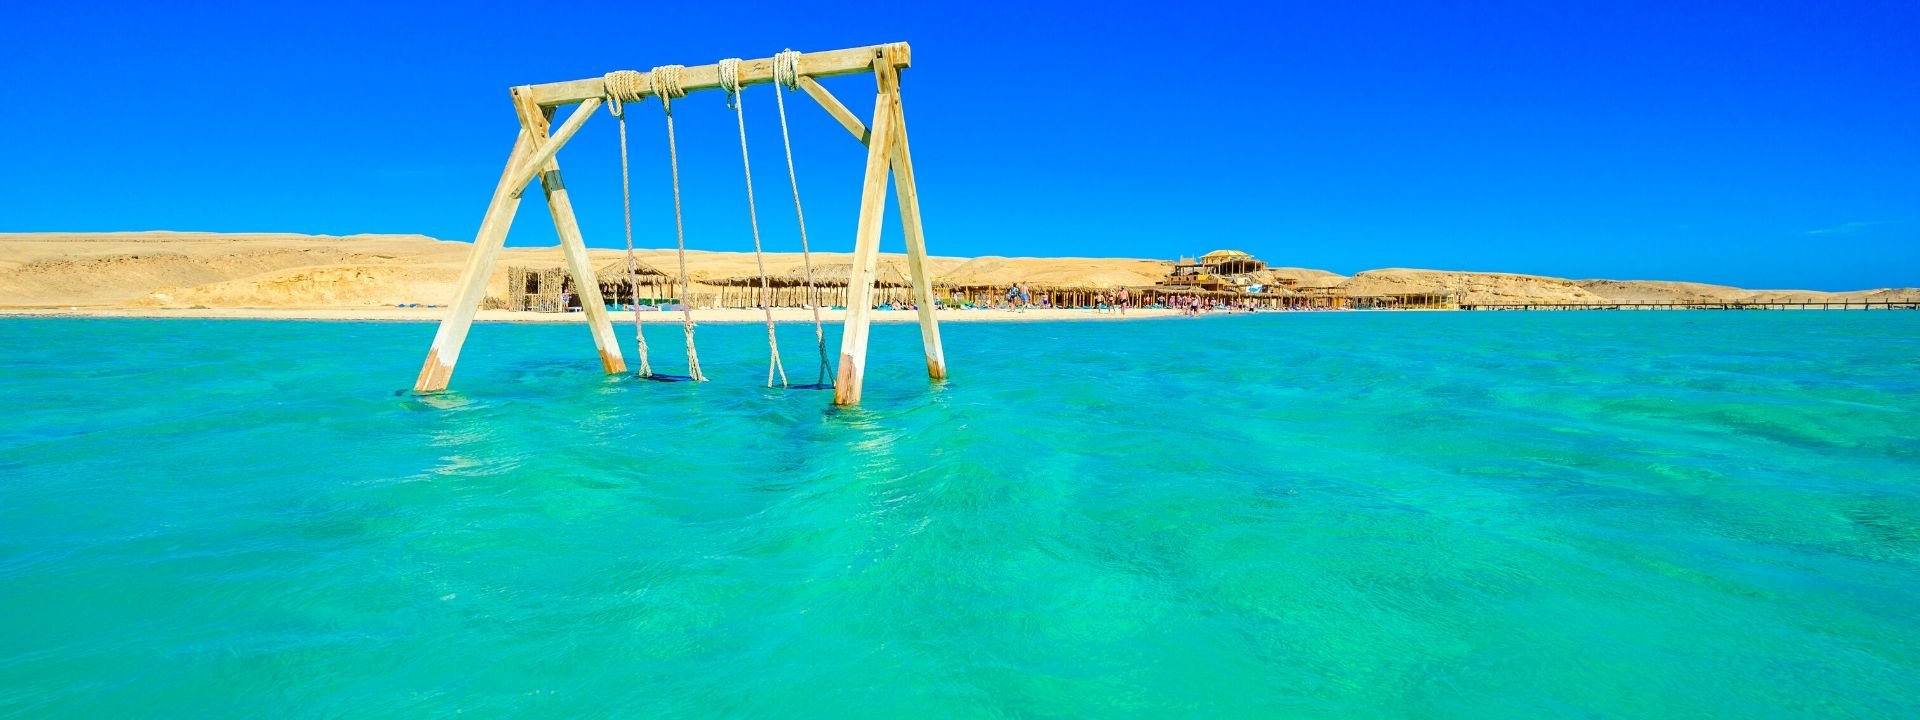 Potápění v Egypte a ostrov Orange Bay